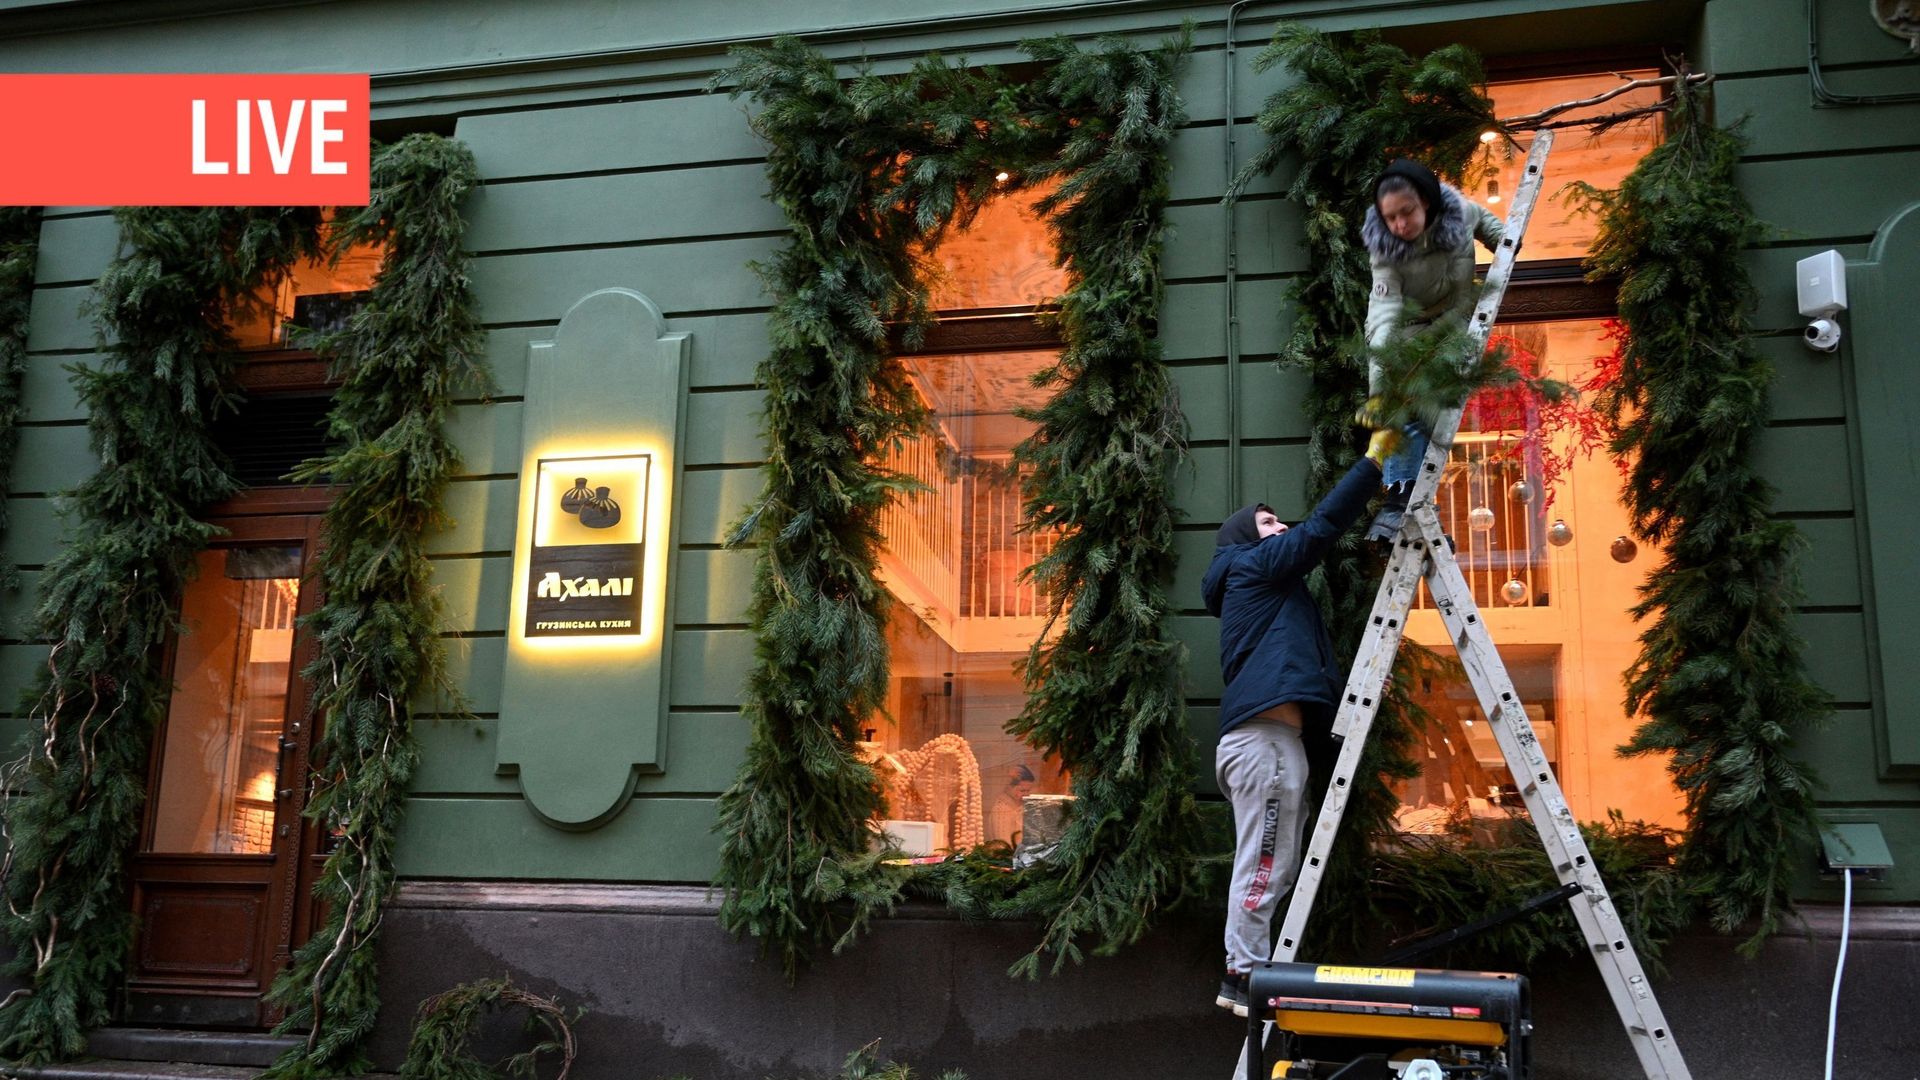 Des employés décorent la fenêtre d’un café dont l’électricité provient d’un générateur situé à l’extérieur, dans le centre de la ville de Lviv, dans l’ouest de l’Ukraine, pendant les heures de coupure de courant, le 22 décembre 2022, alors que la Russie e